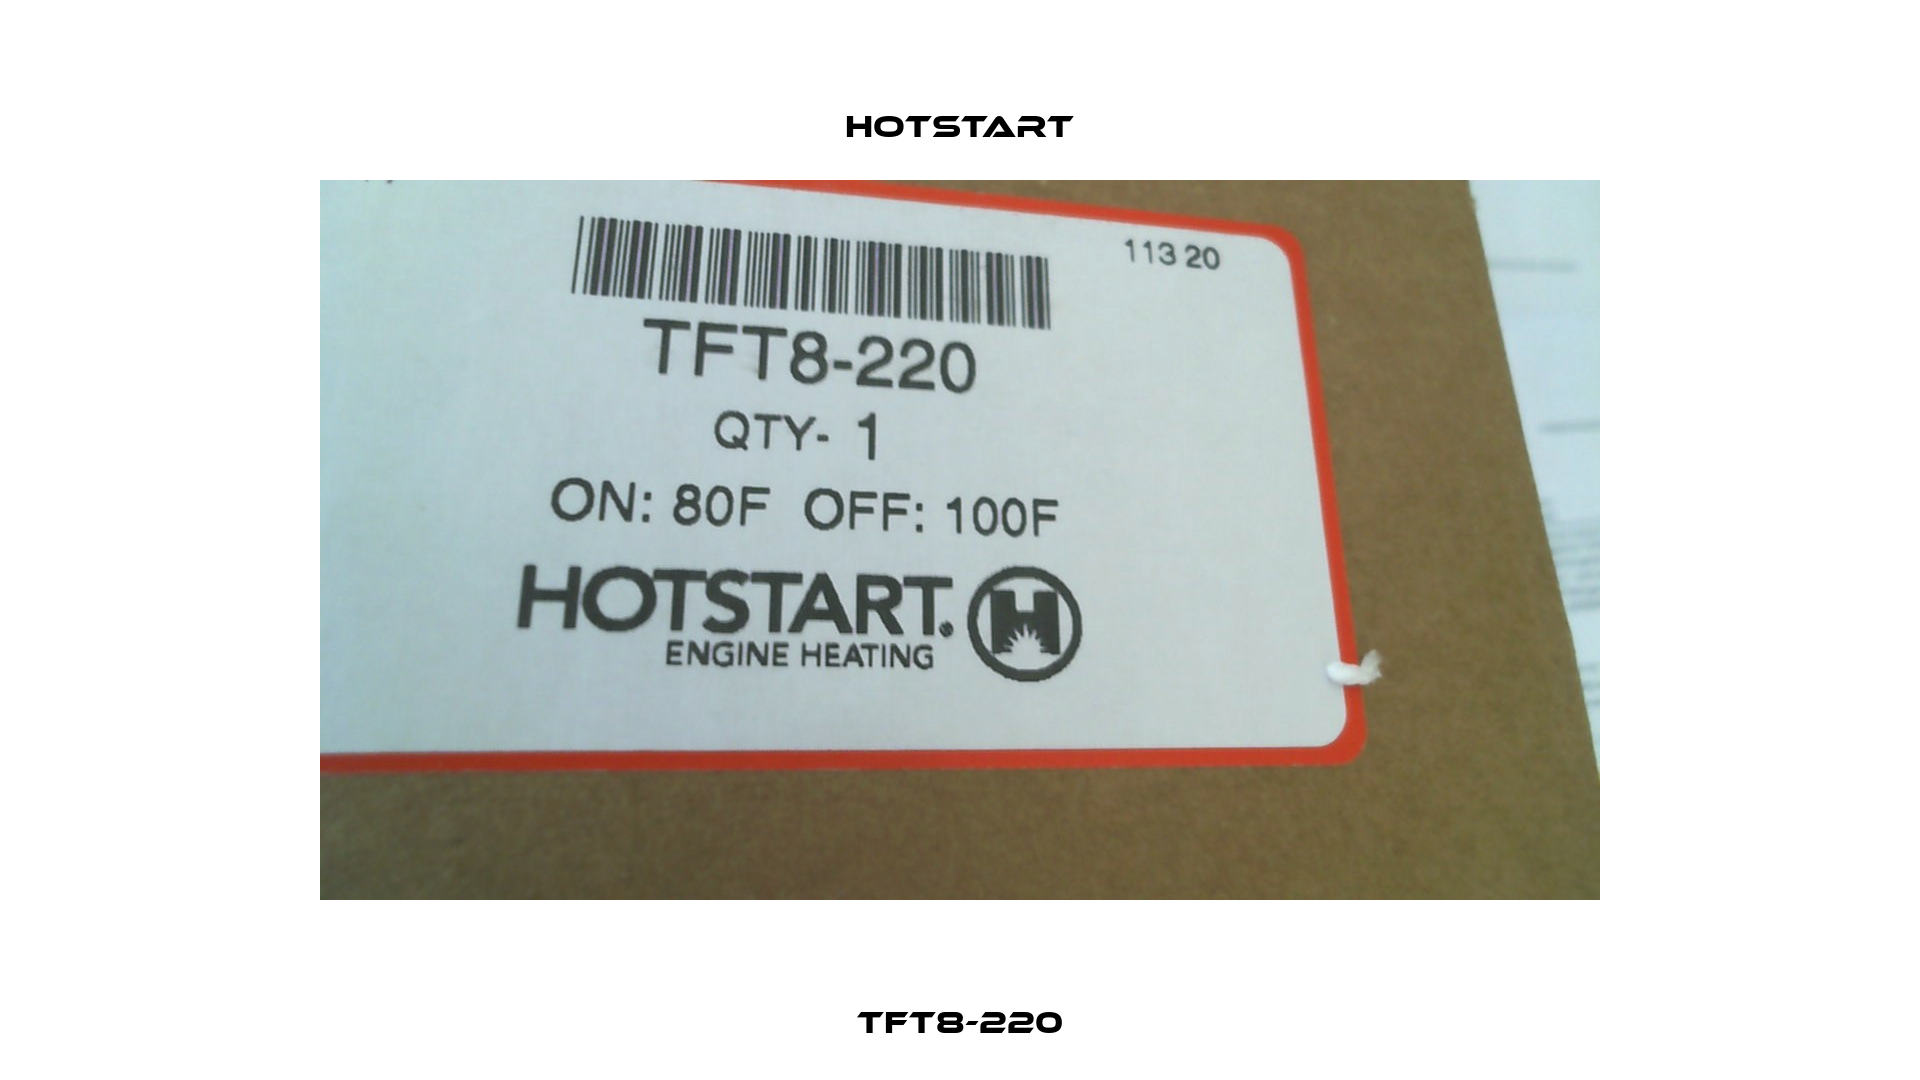 TFT8-220 Hotstart